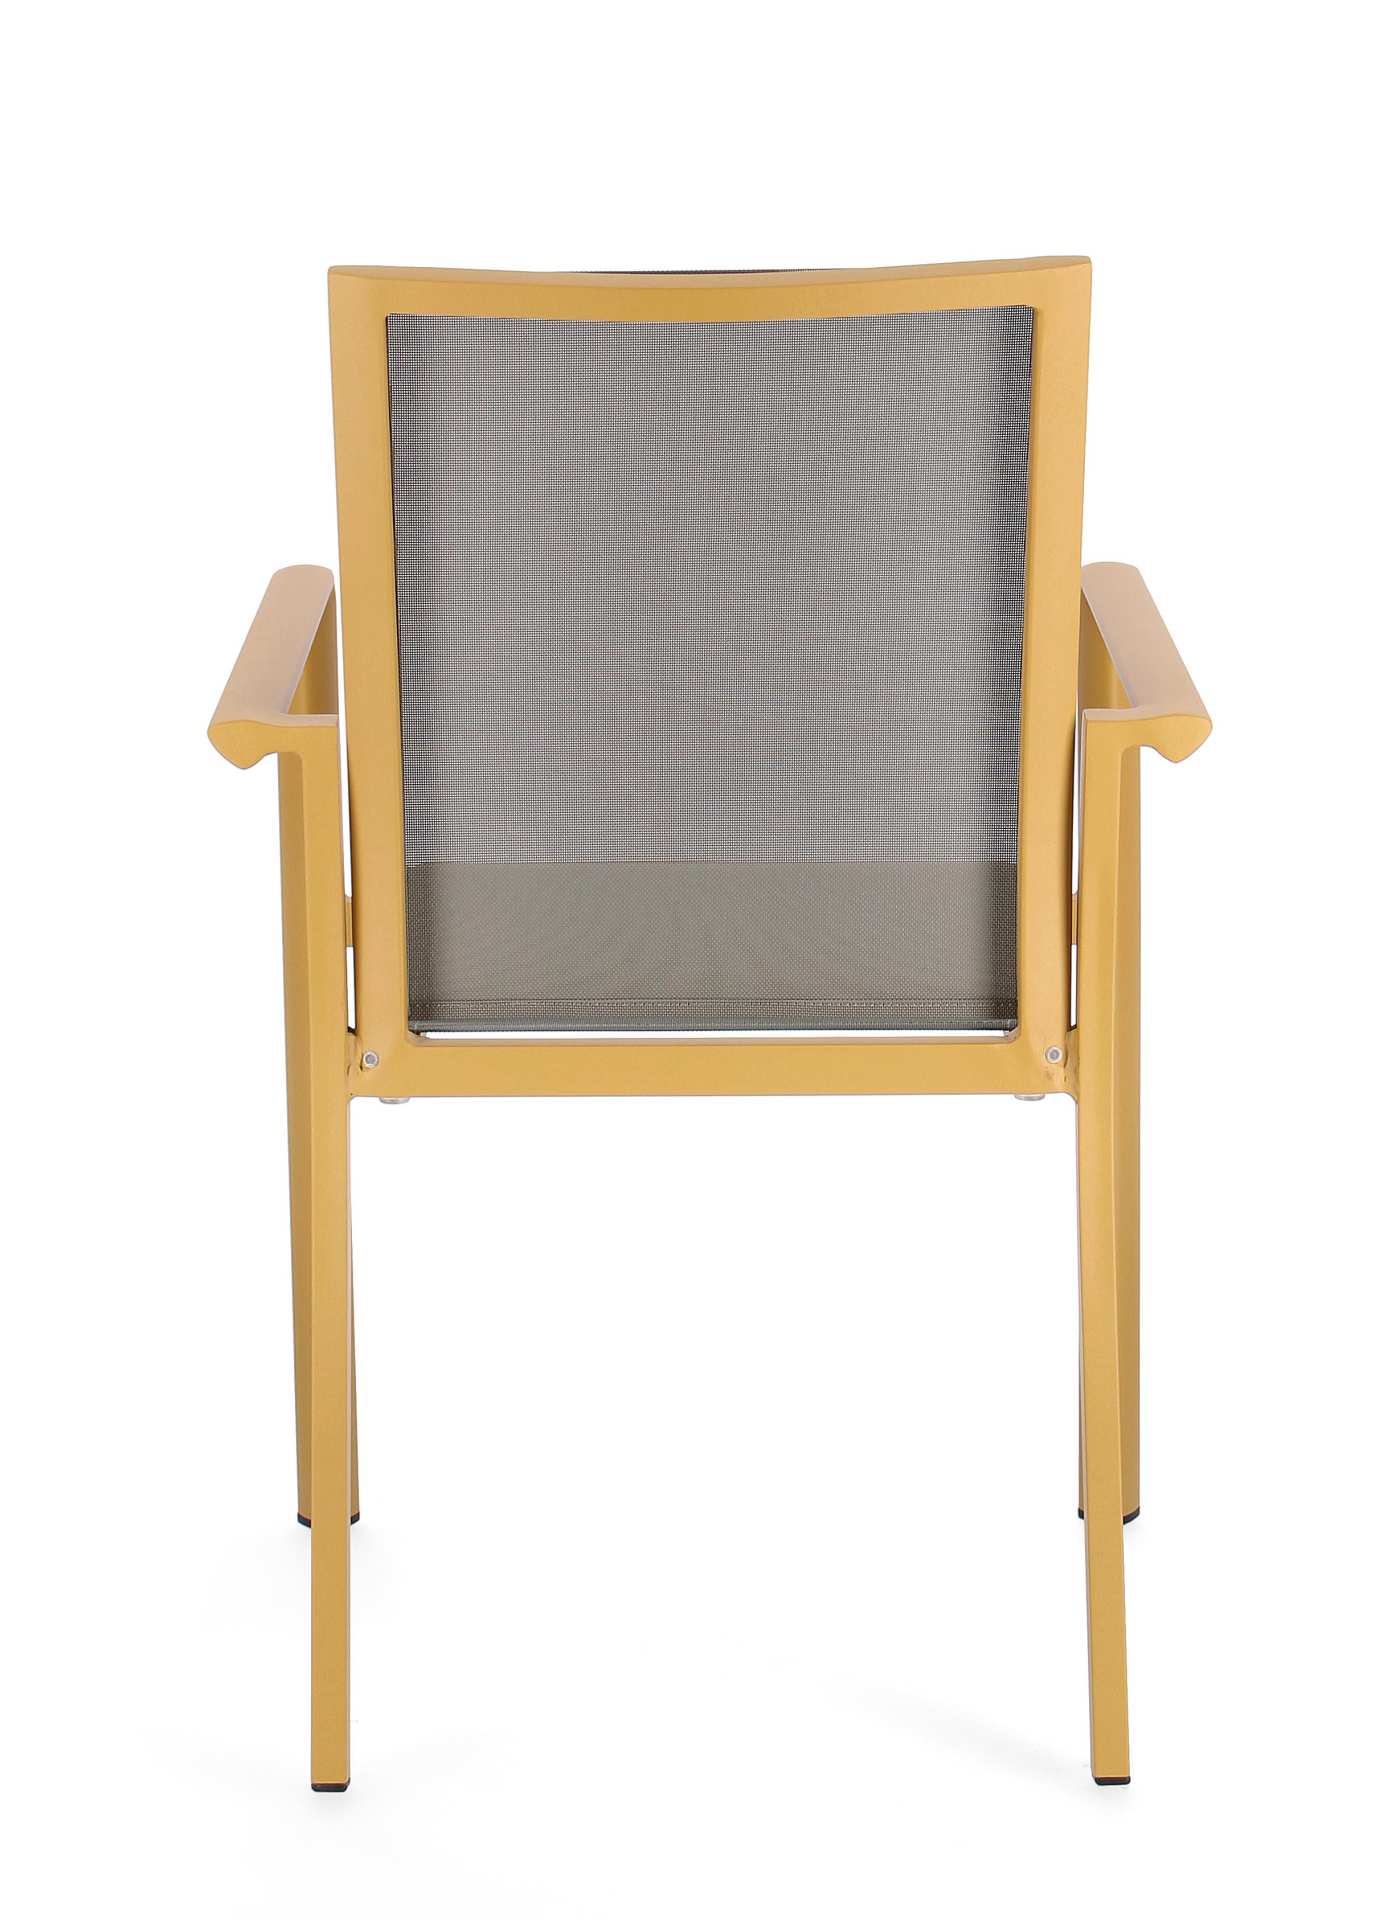 Der Gartenstuhl Konnor überzeugt mit seinem modernen Design. Gefertigt wurde er aus Textilene, welcher einen grauen Farbton besitzt. Das Gestell ist aus Aluminium und hat eine gelbe Farbe. Der Stuhl verfügt über eine Sitzhöhe von 45 cm und ist für den Out